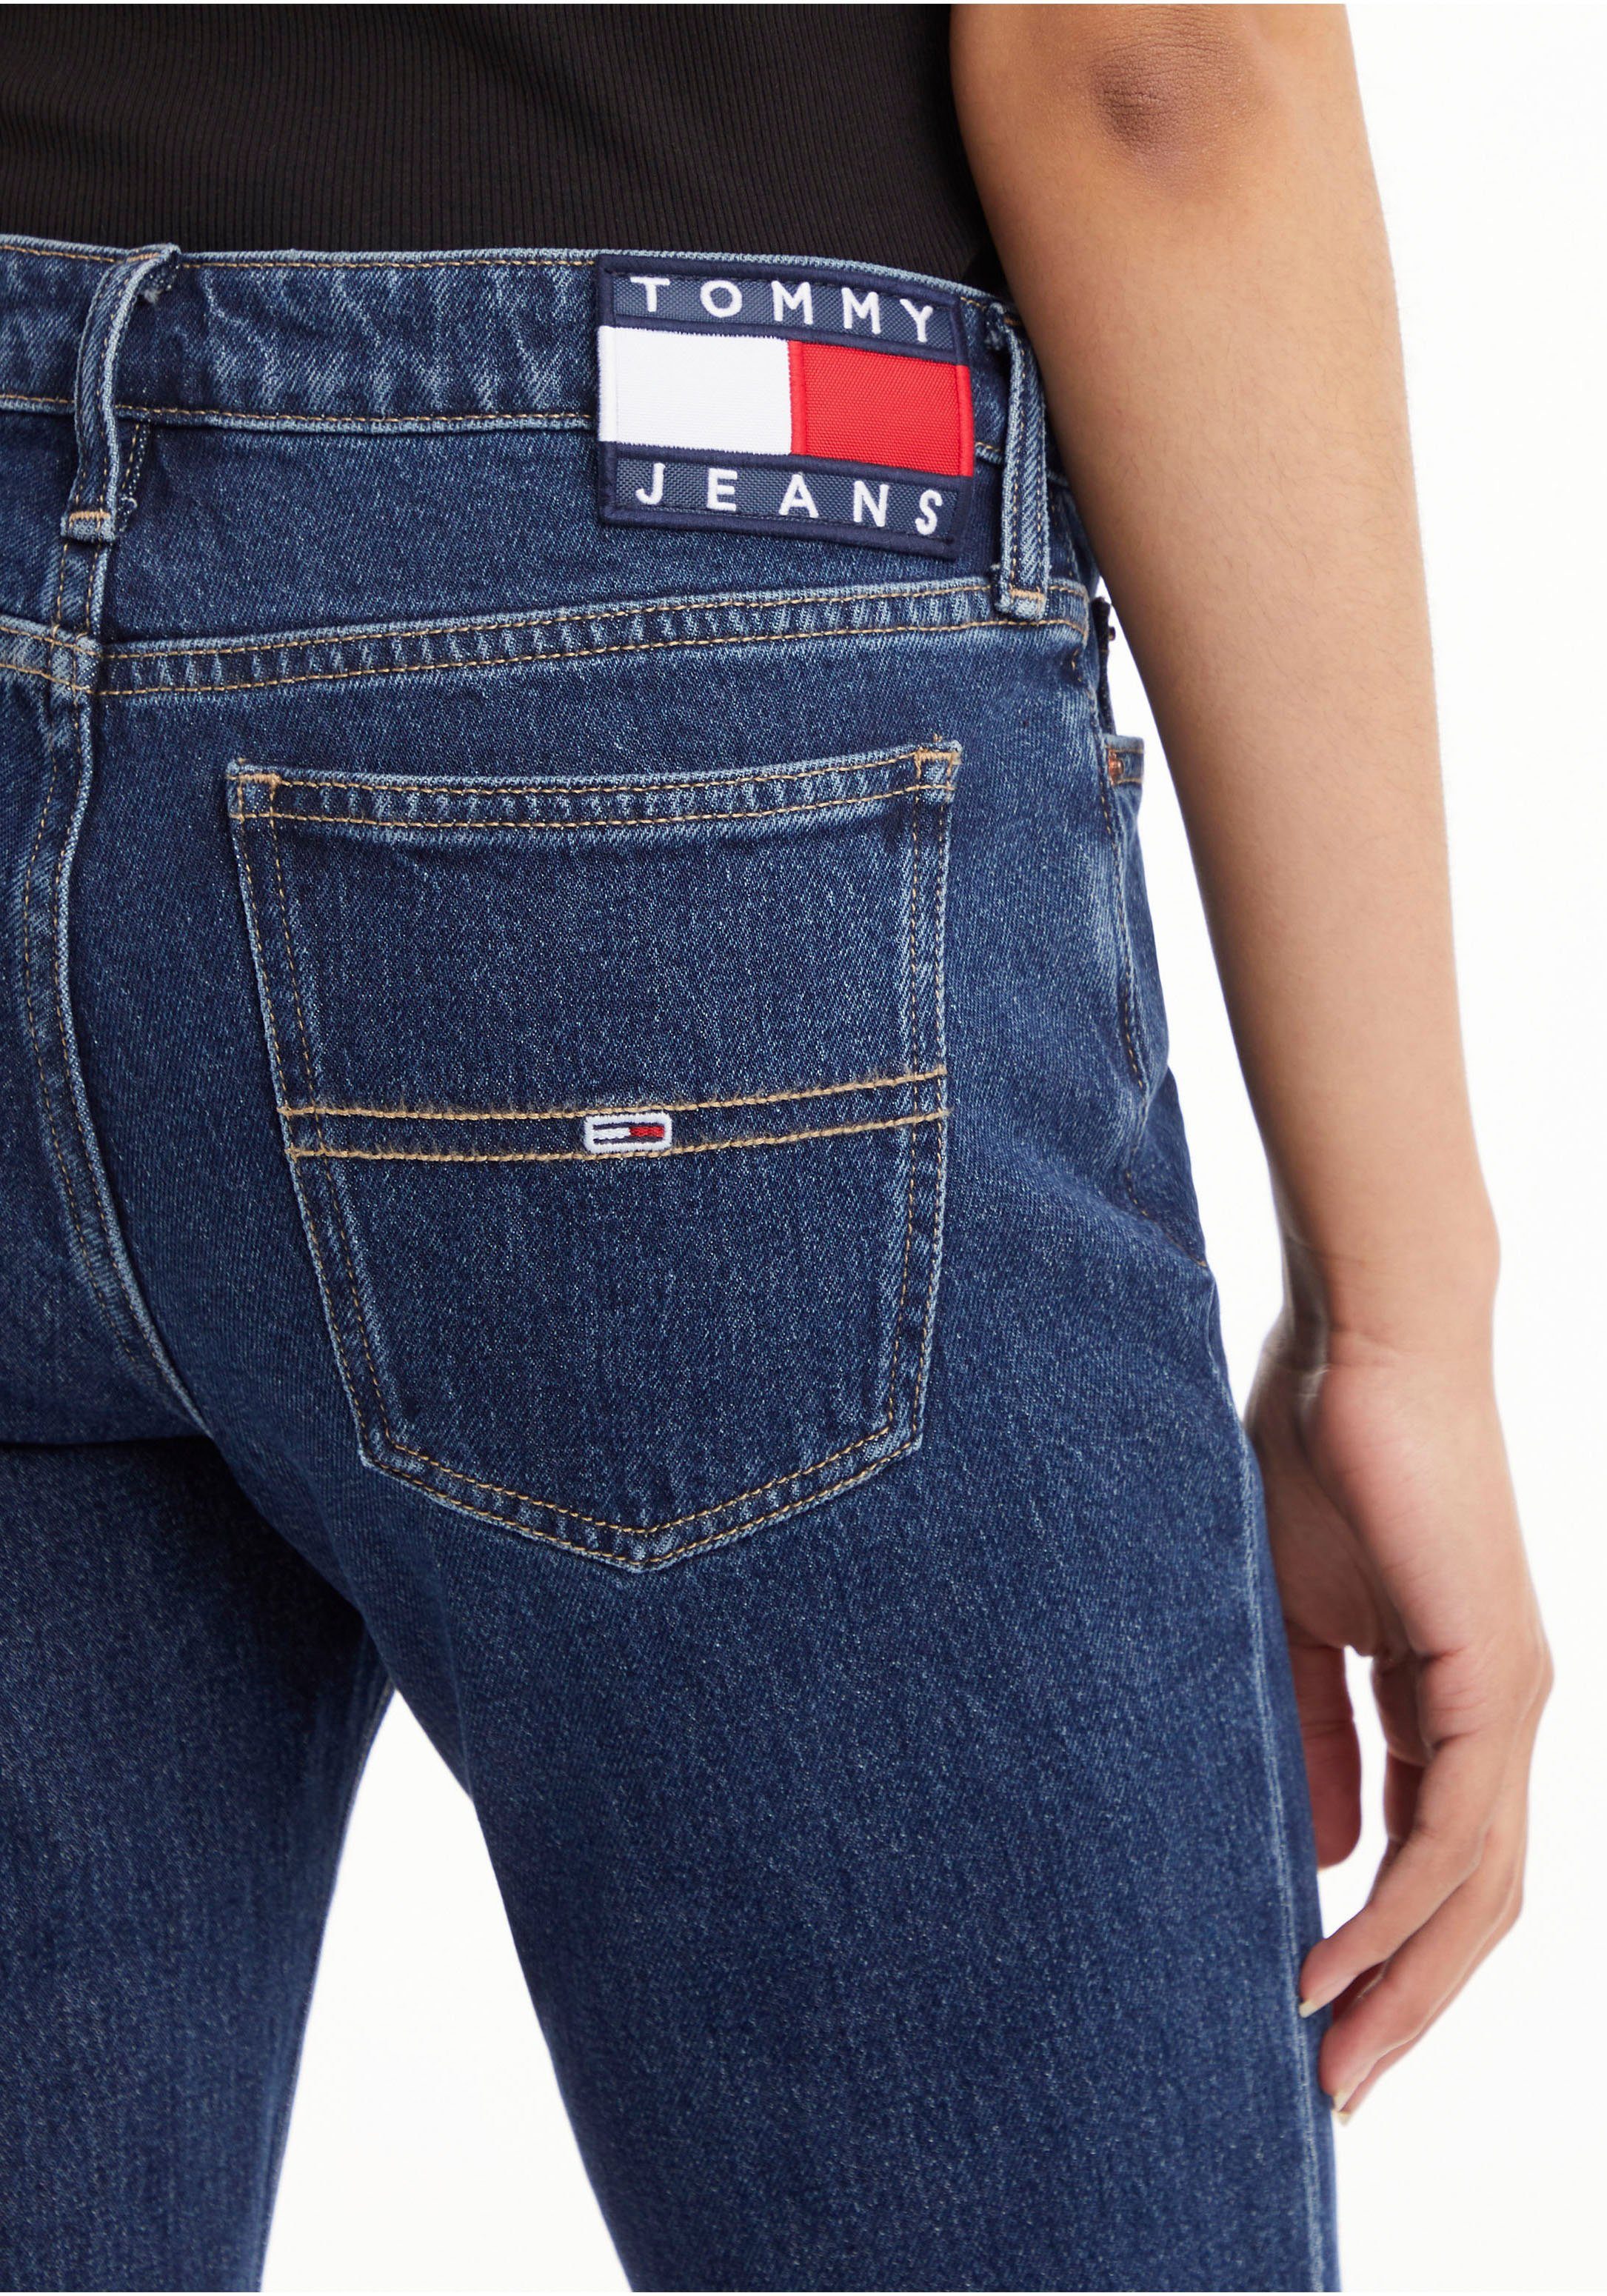 Tommy Jeans am Denim-Medium Logo-Badge mit Jeans Bund Tommy Schlagjeans